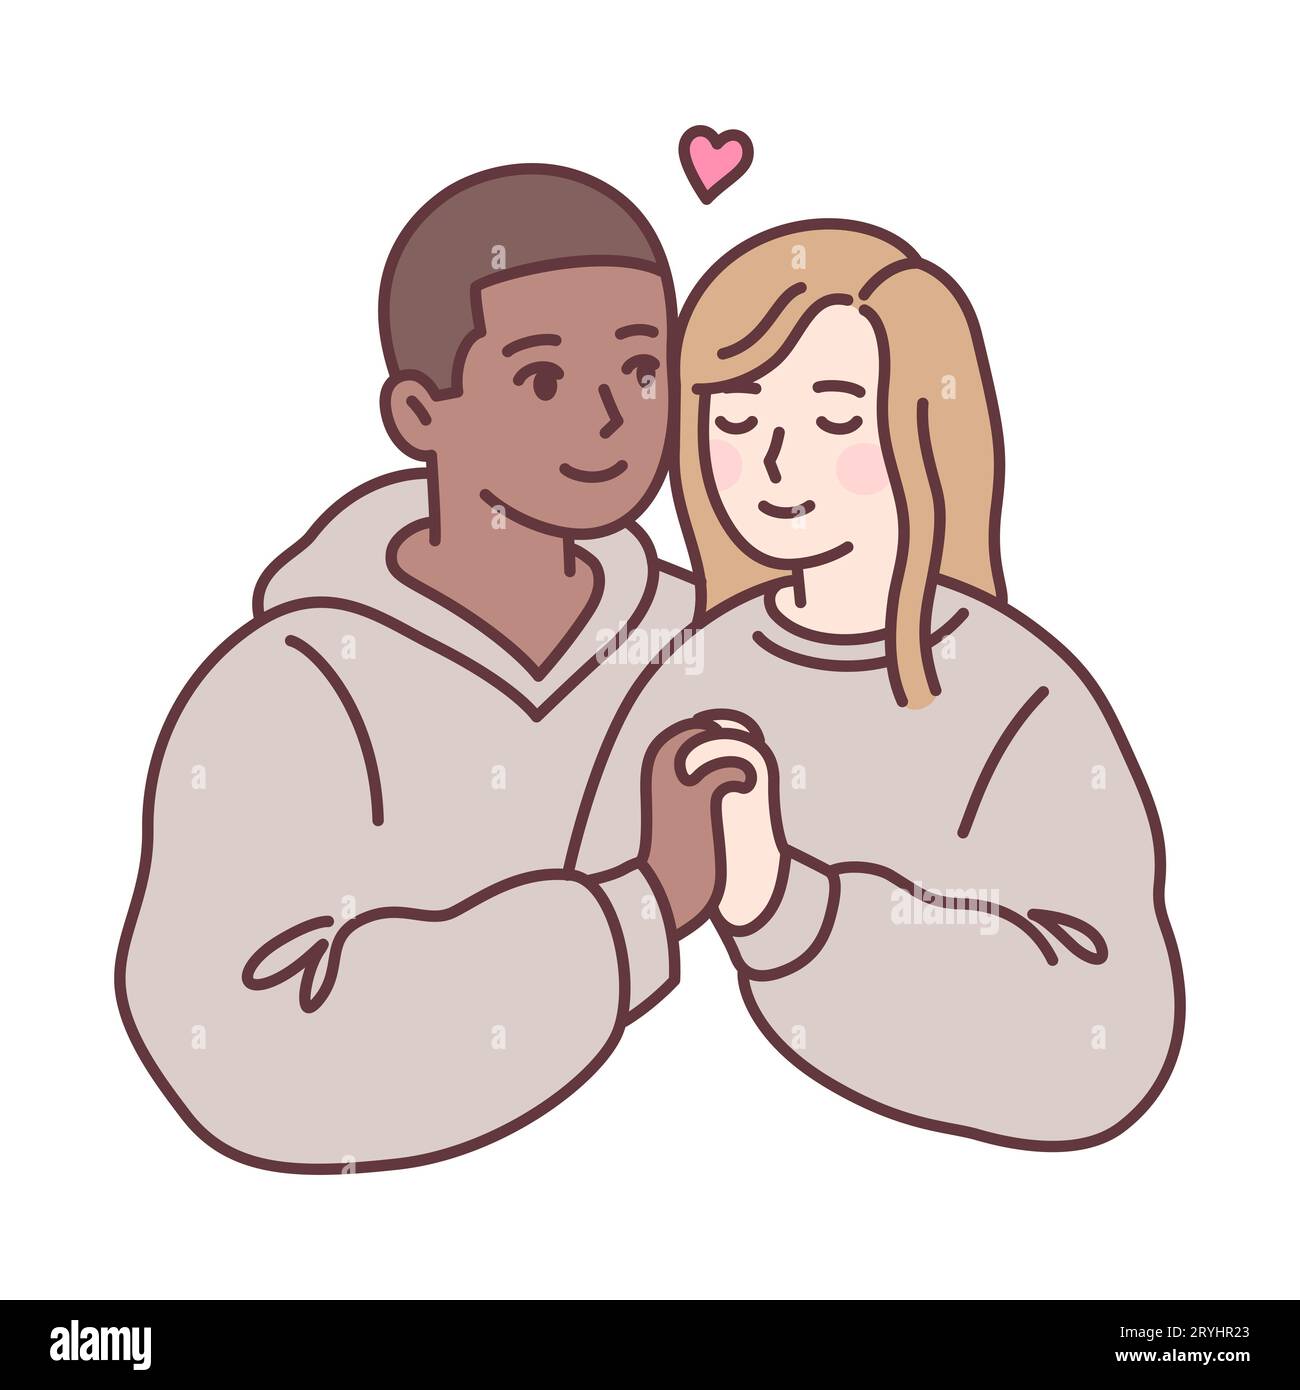 Ein süßes, junges gemischtes Paar, das sich in die Hände hält. Schwarzer Kerl und blondes Mädchen in passender Kleidung. Einfache Zeichentrickzeichnung, Vektorillustration. Stock Vektor